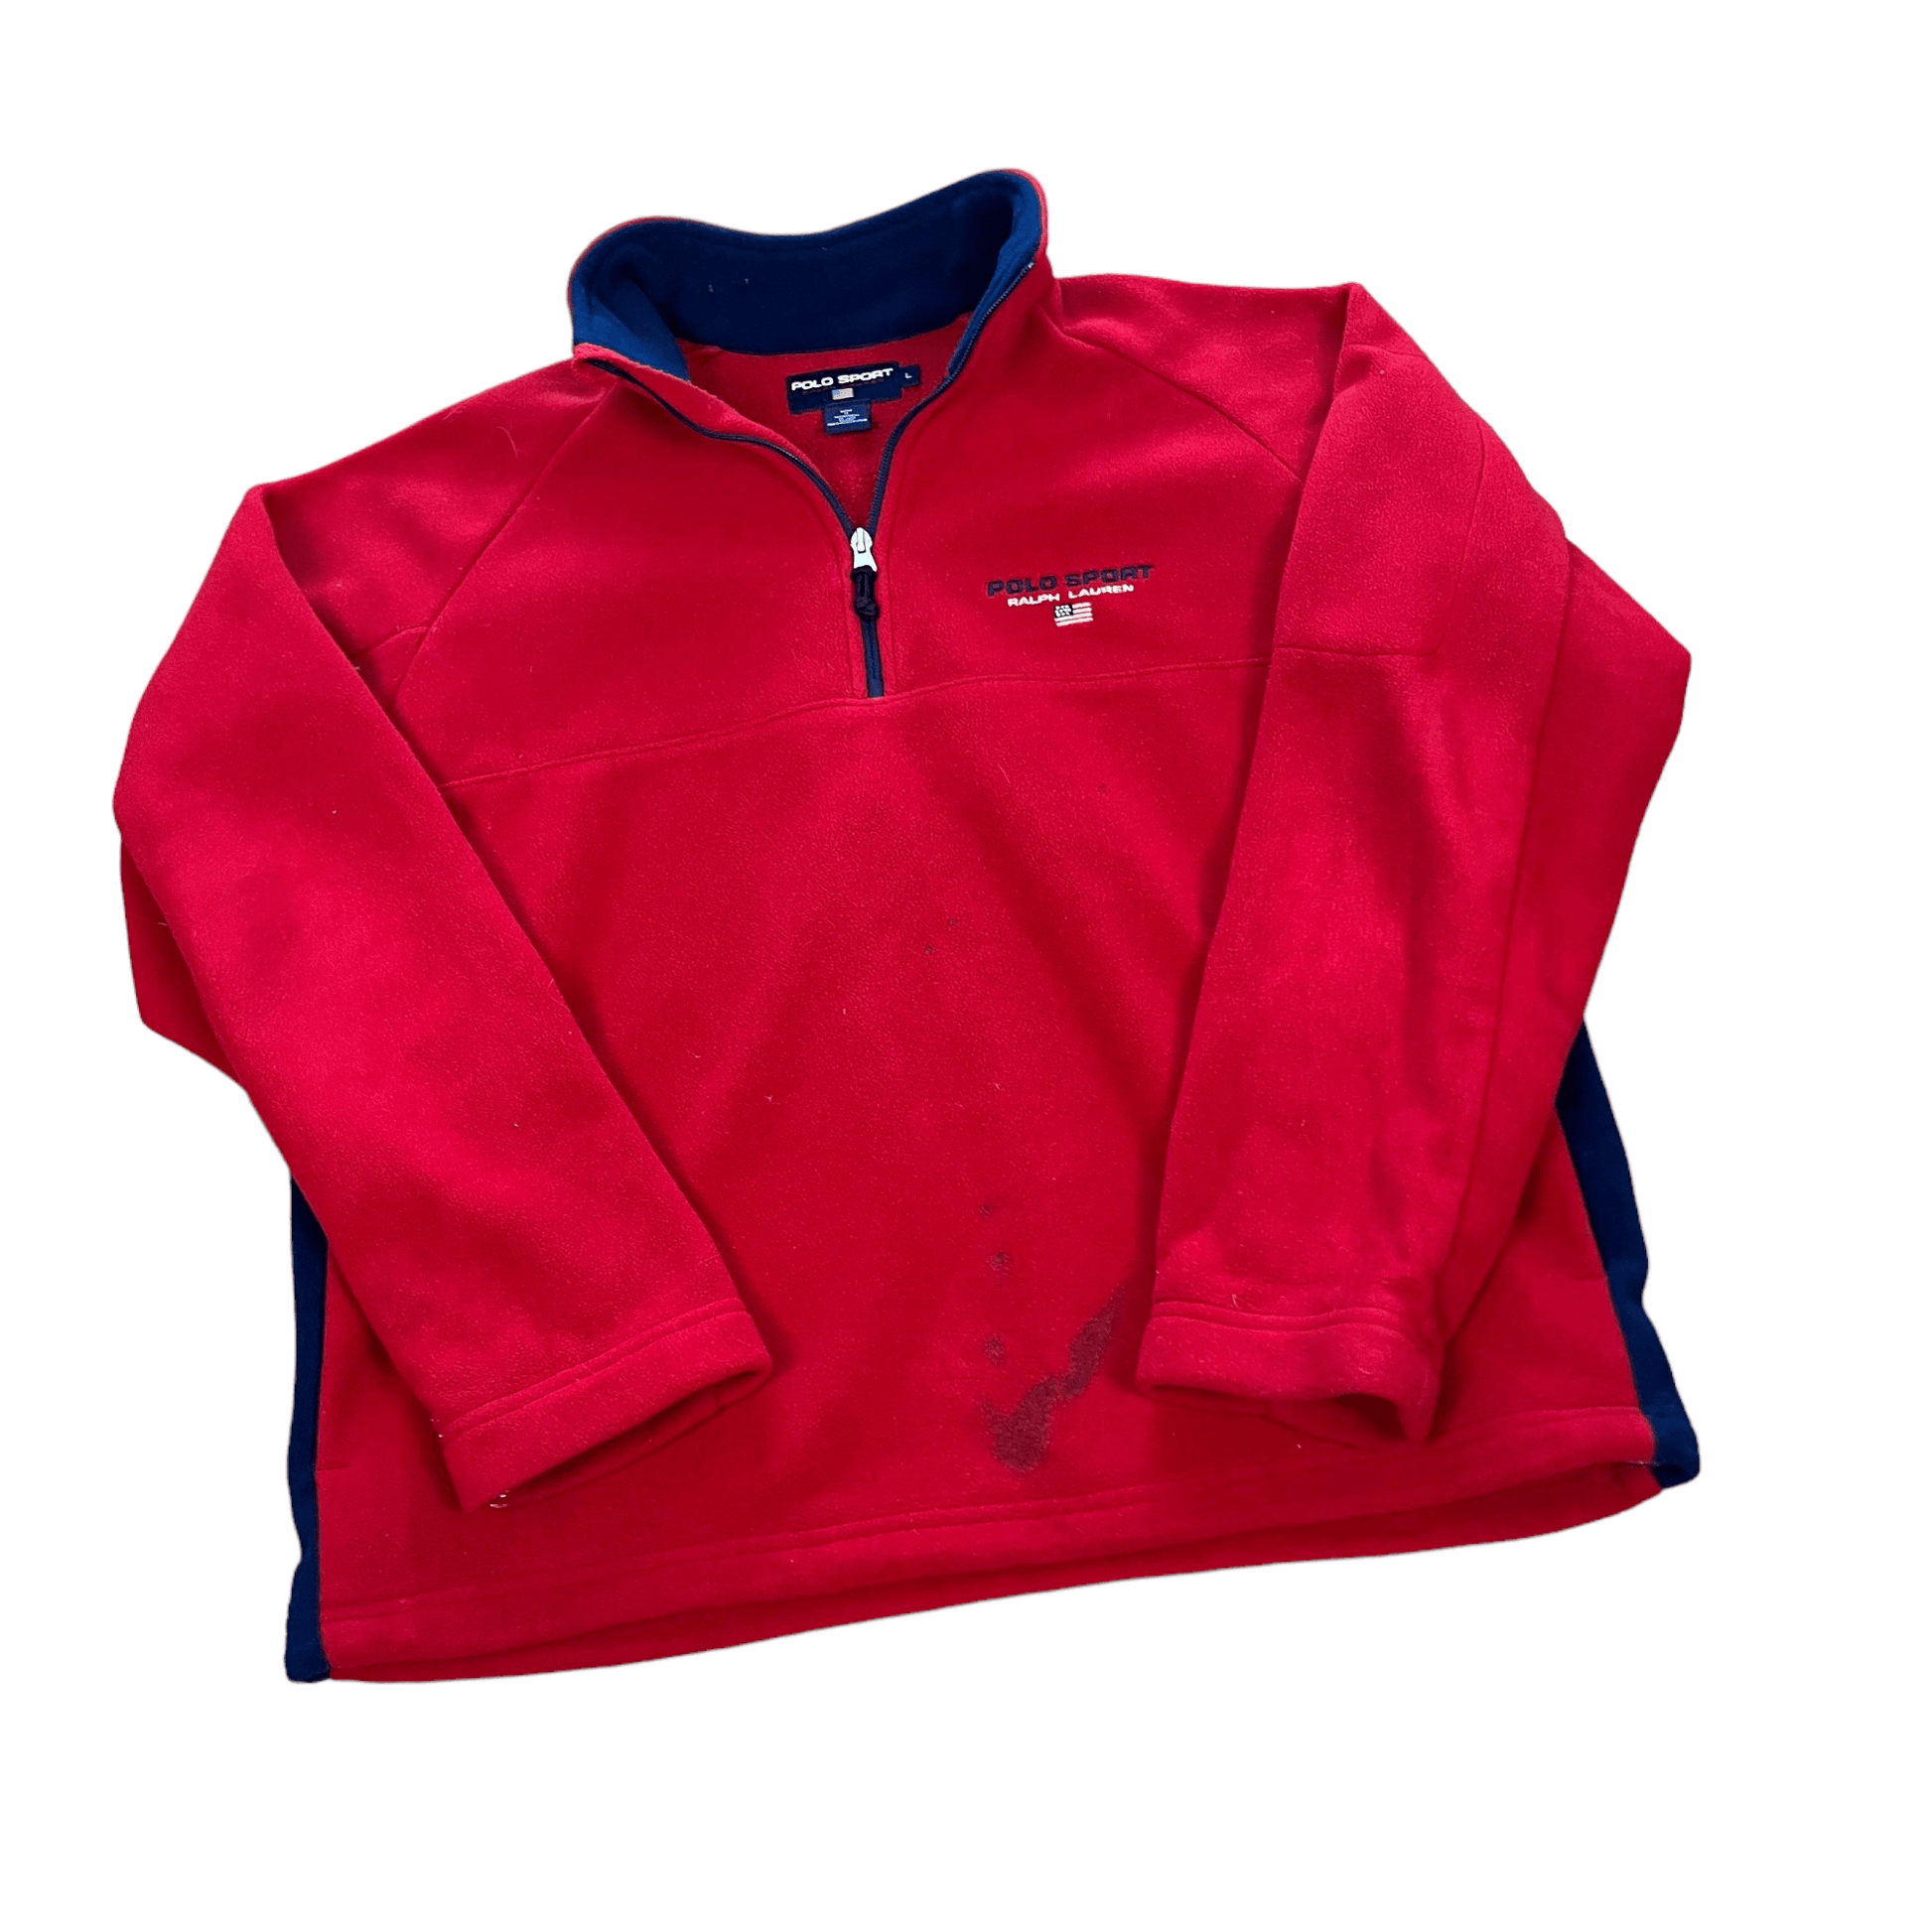 Vintage 90s Red Ralph Lauren Polo Sport Quarter Zip Fleece - Large - The Streetwear Studio